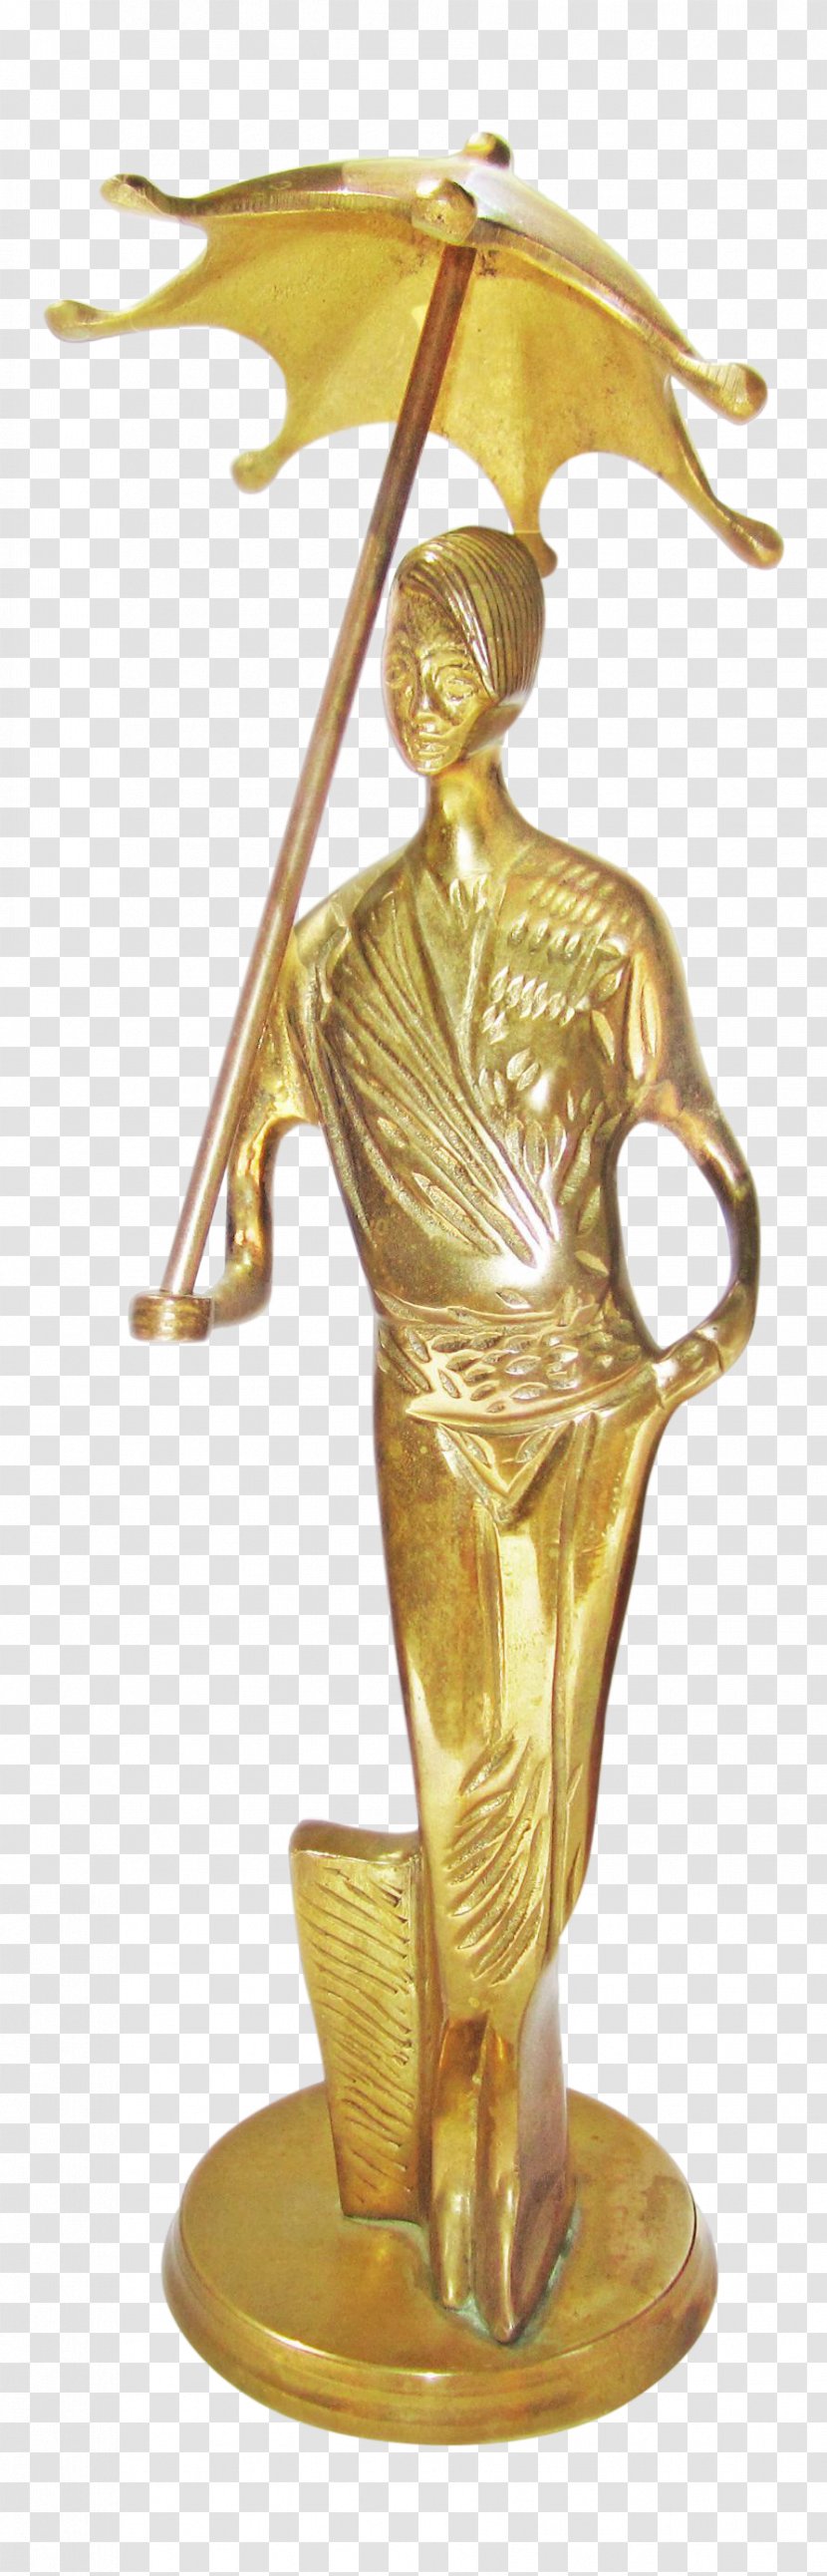 Bronze Sculpture Brass Classical Transparent PNG